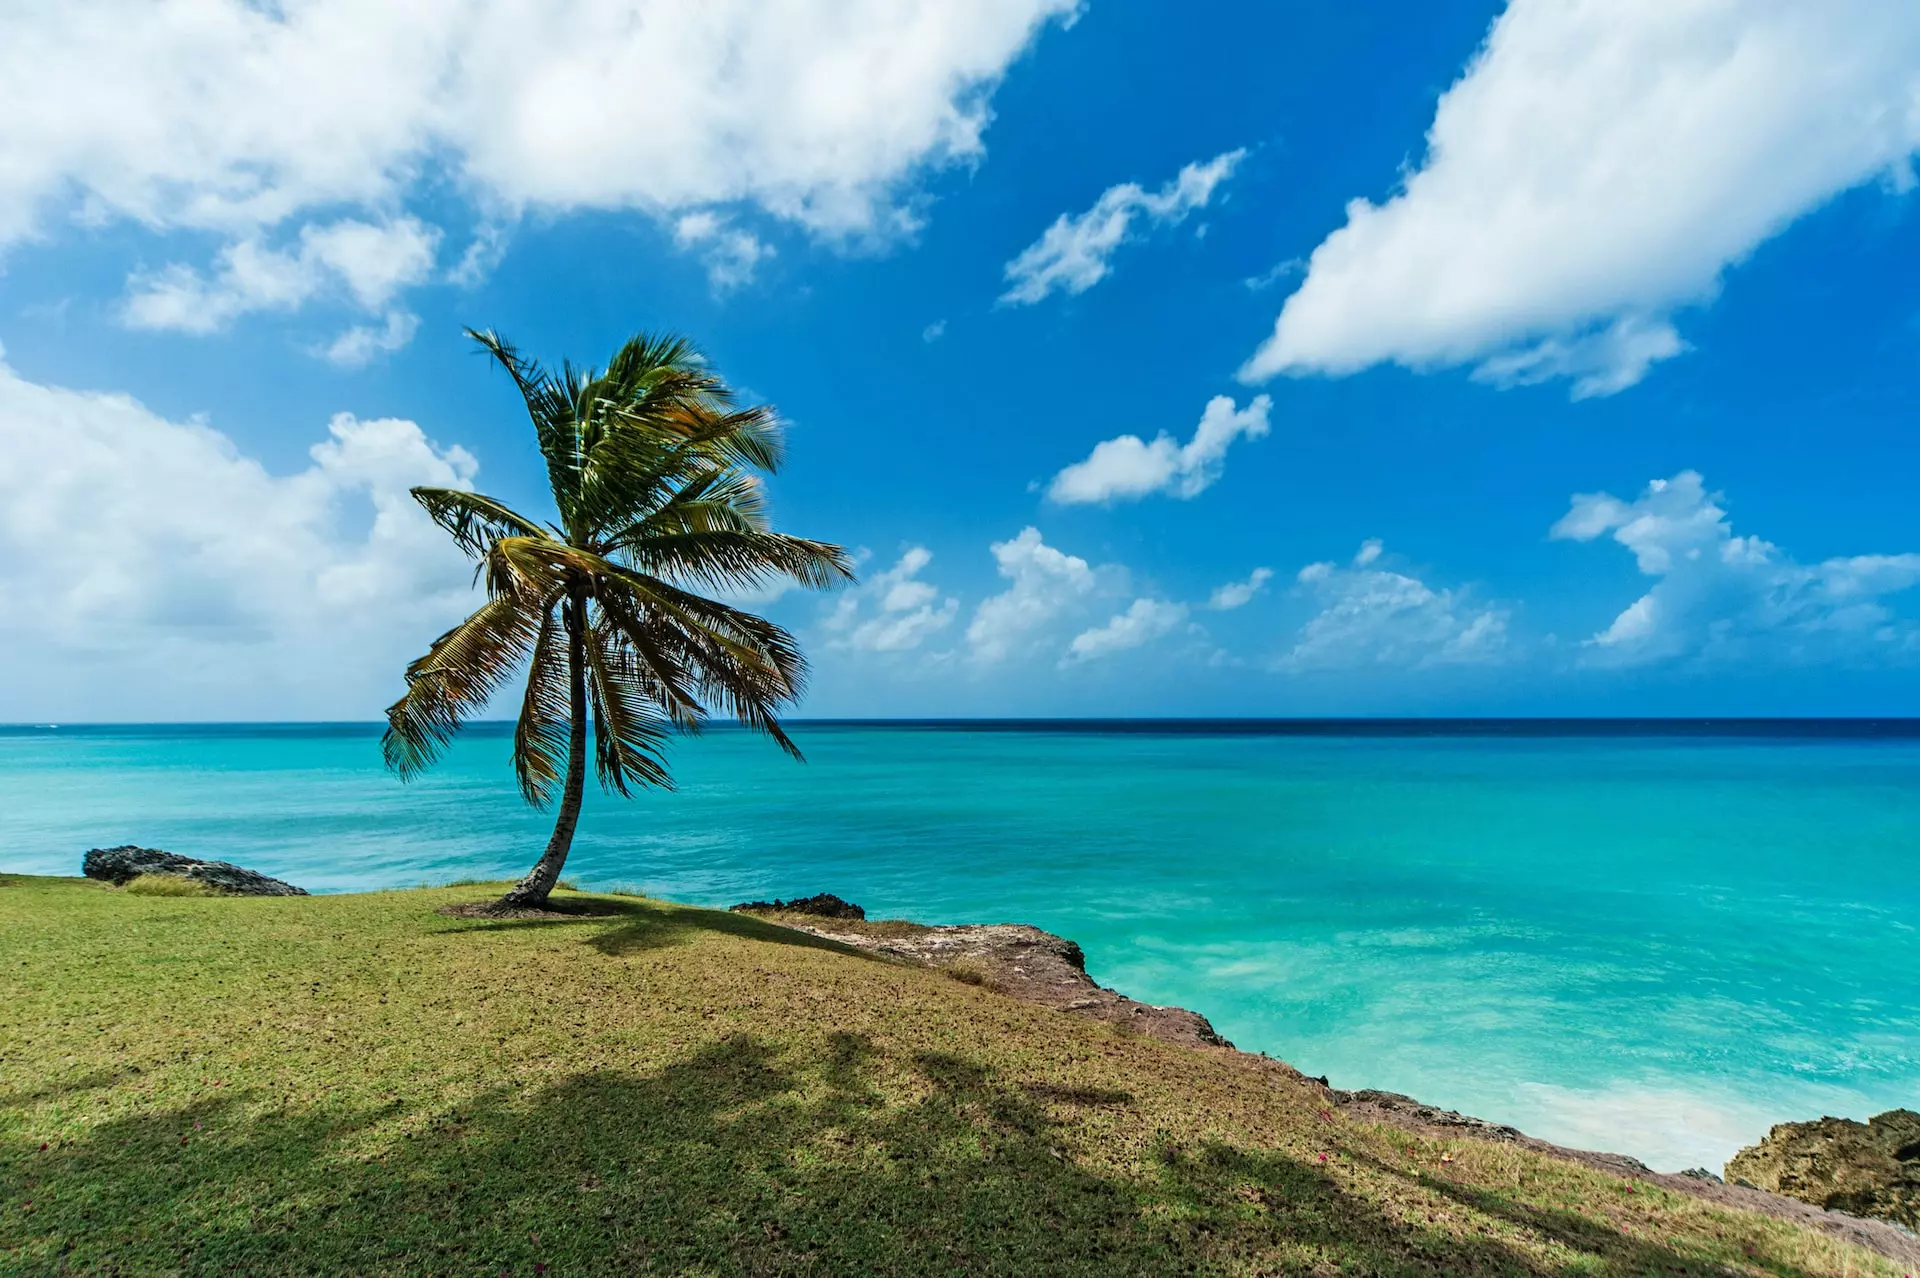 A palm tree on a tropical island